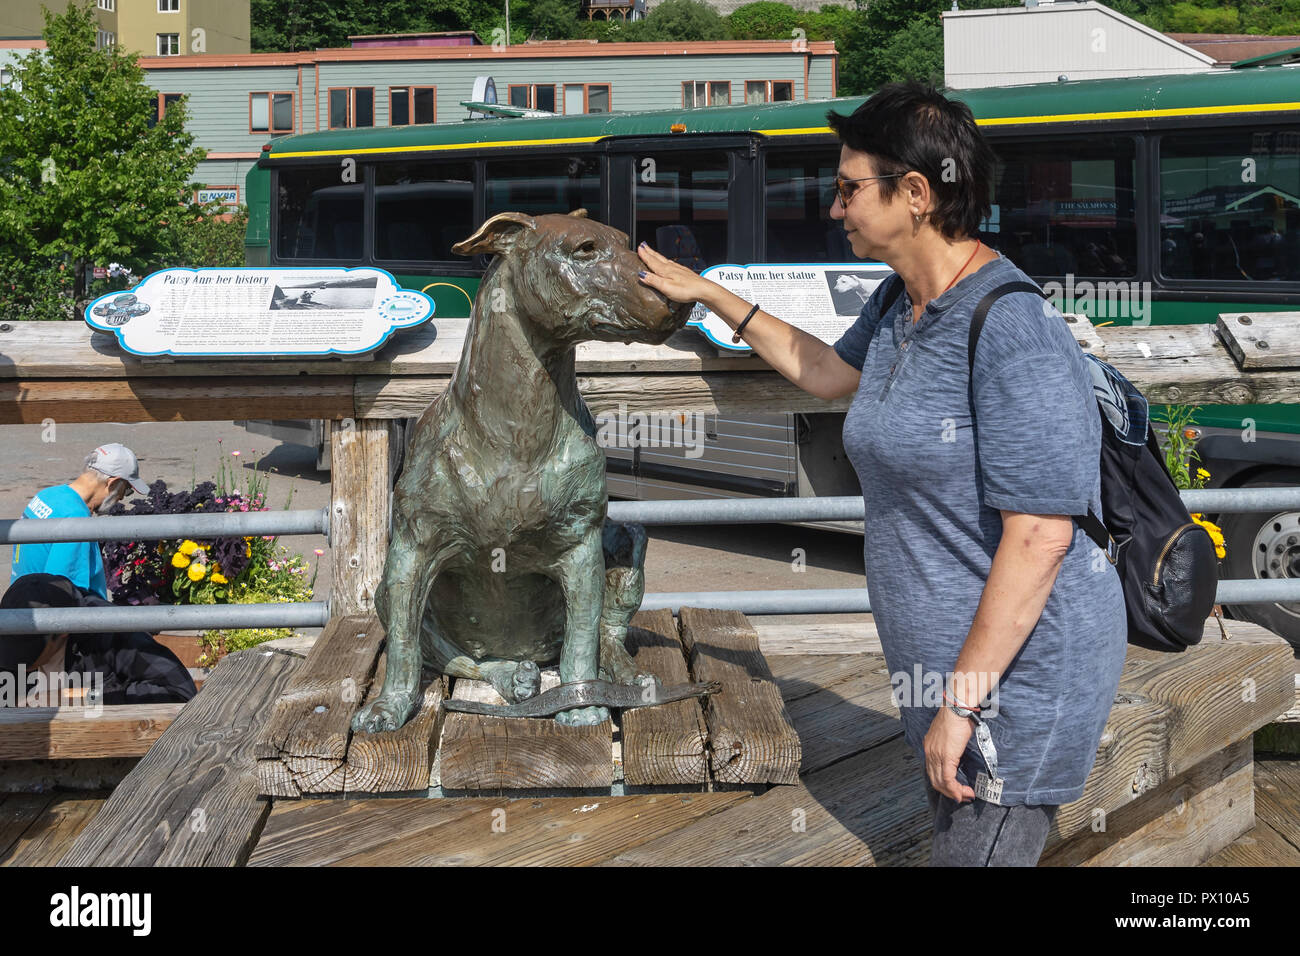 Palm touristique sur la tête statue de Patsy Ann : Célèbre Alaskan Bull Terrier,Juneau, capitale de l'Alaska, USA Banque D'Images